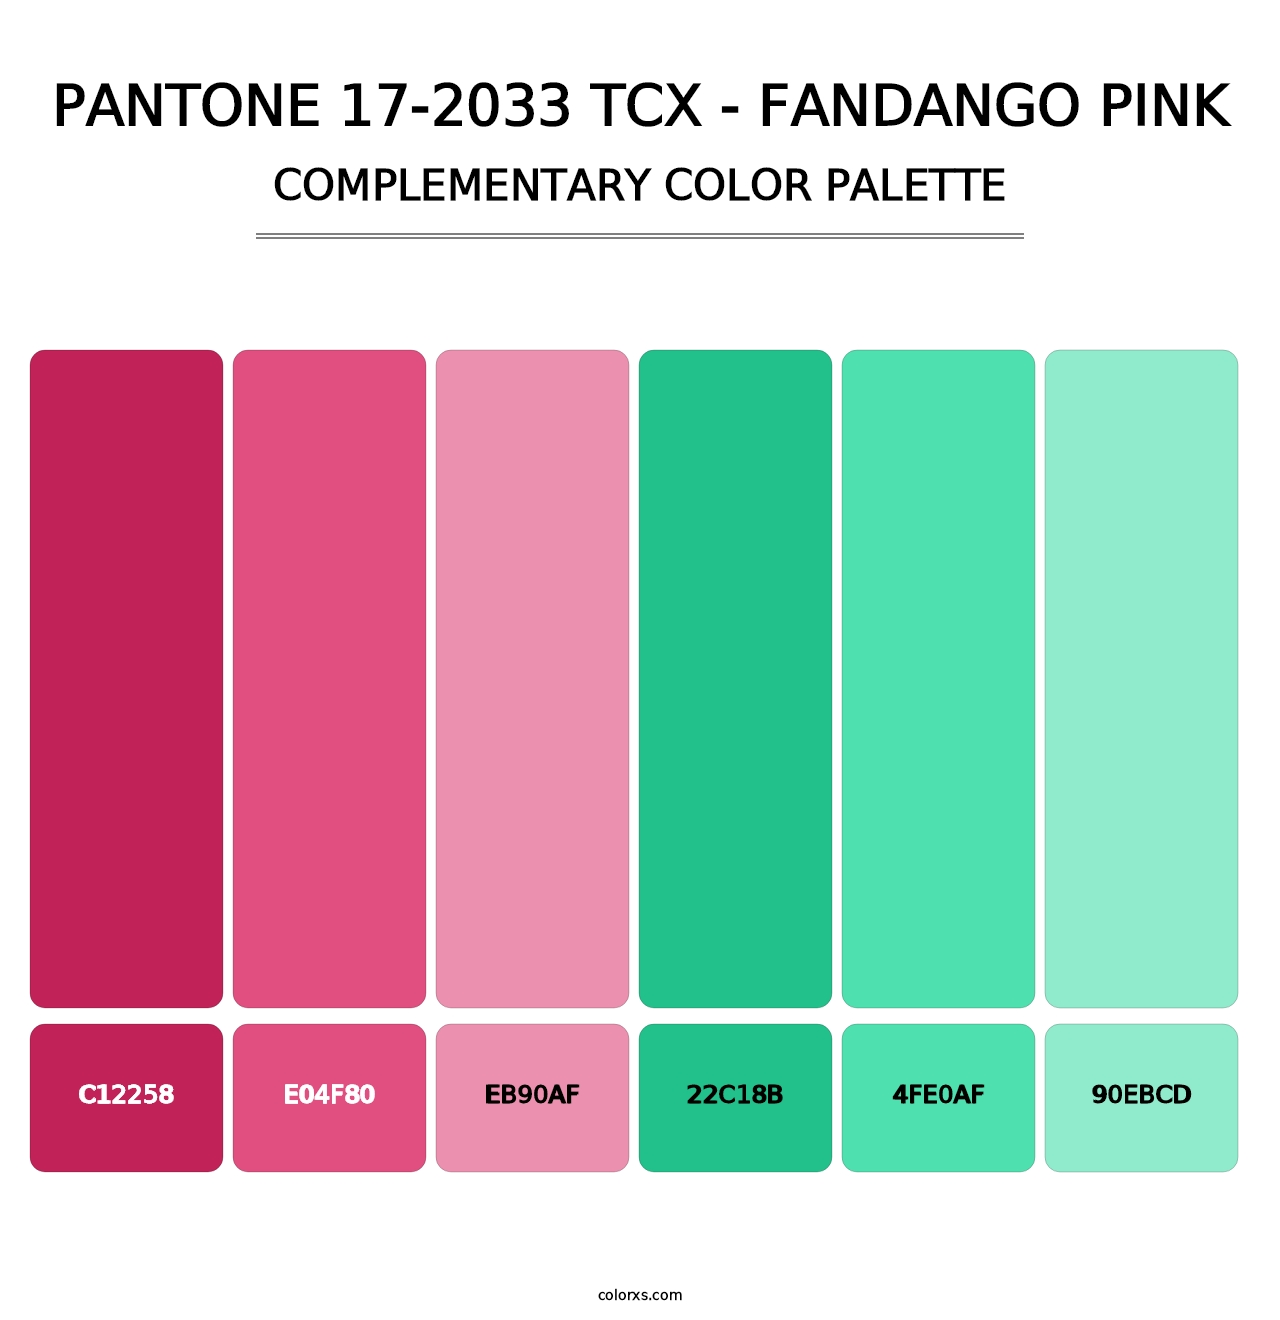 PANTONE 17-2033 TCX - Fandango Pink - Complementary Color Palette